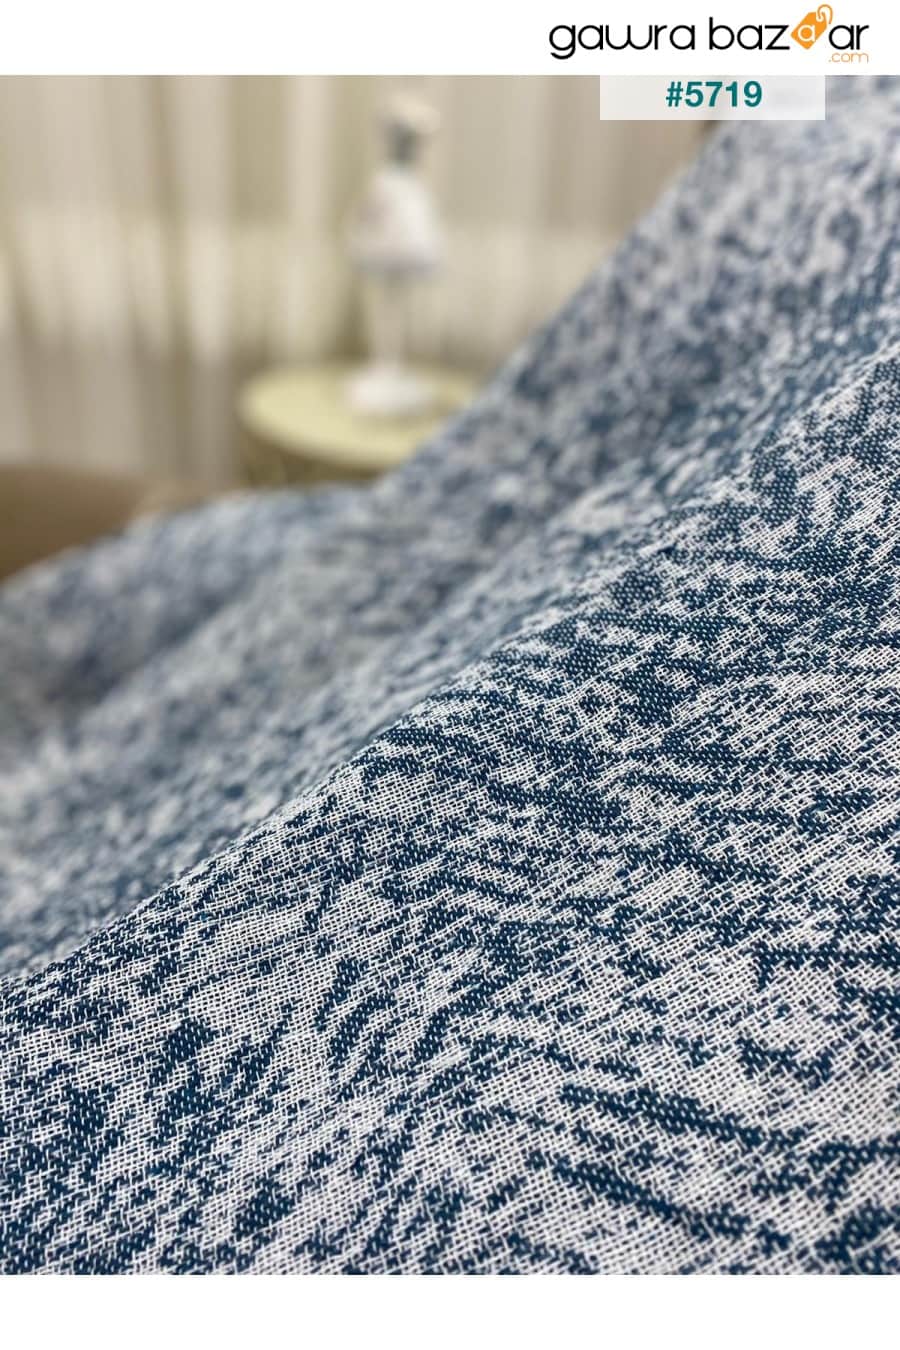 غطاء أريكة صوفا قطني فاخر أزرق دينم 170x220 وجهان مضادان للعرق مانع للانزلاق Özlü Home 1